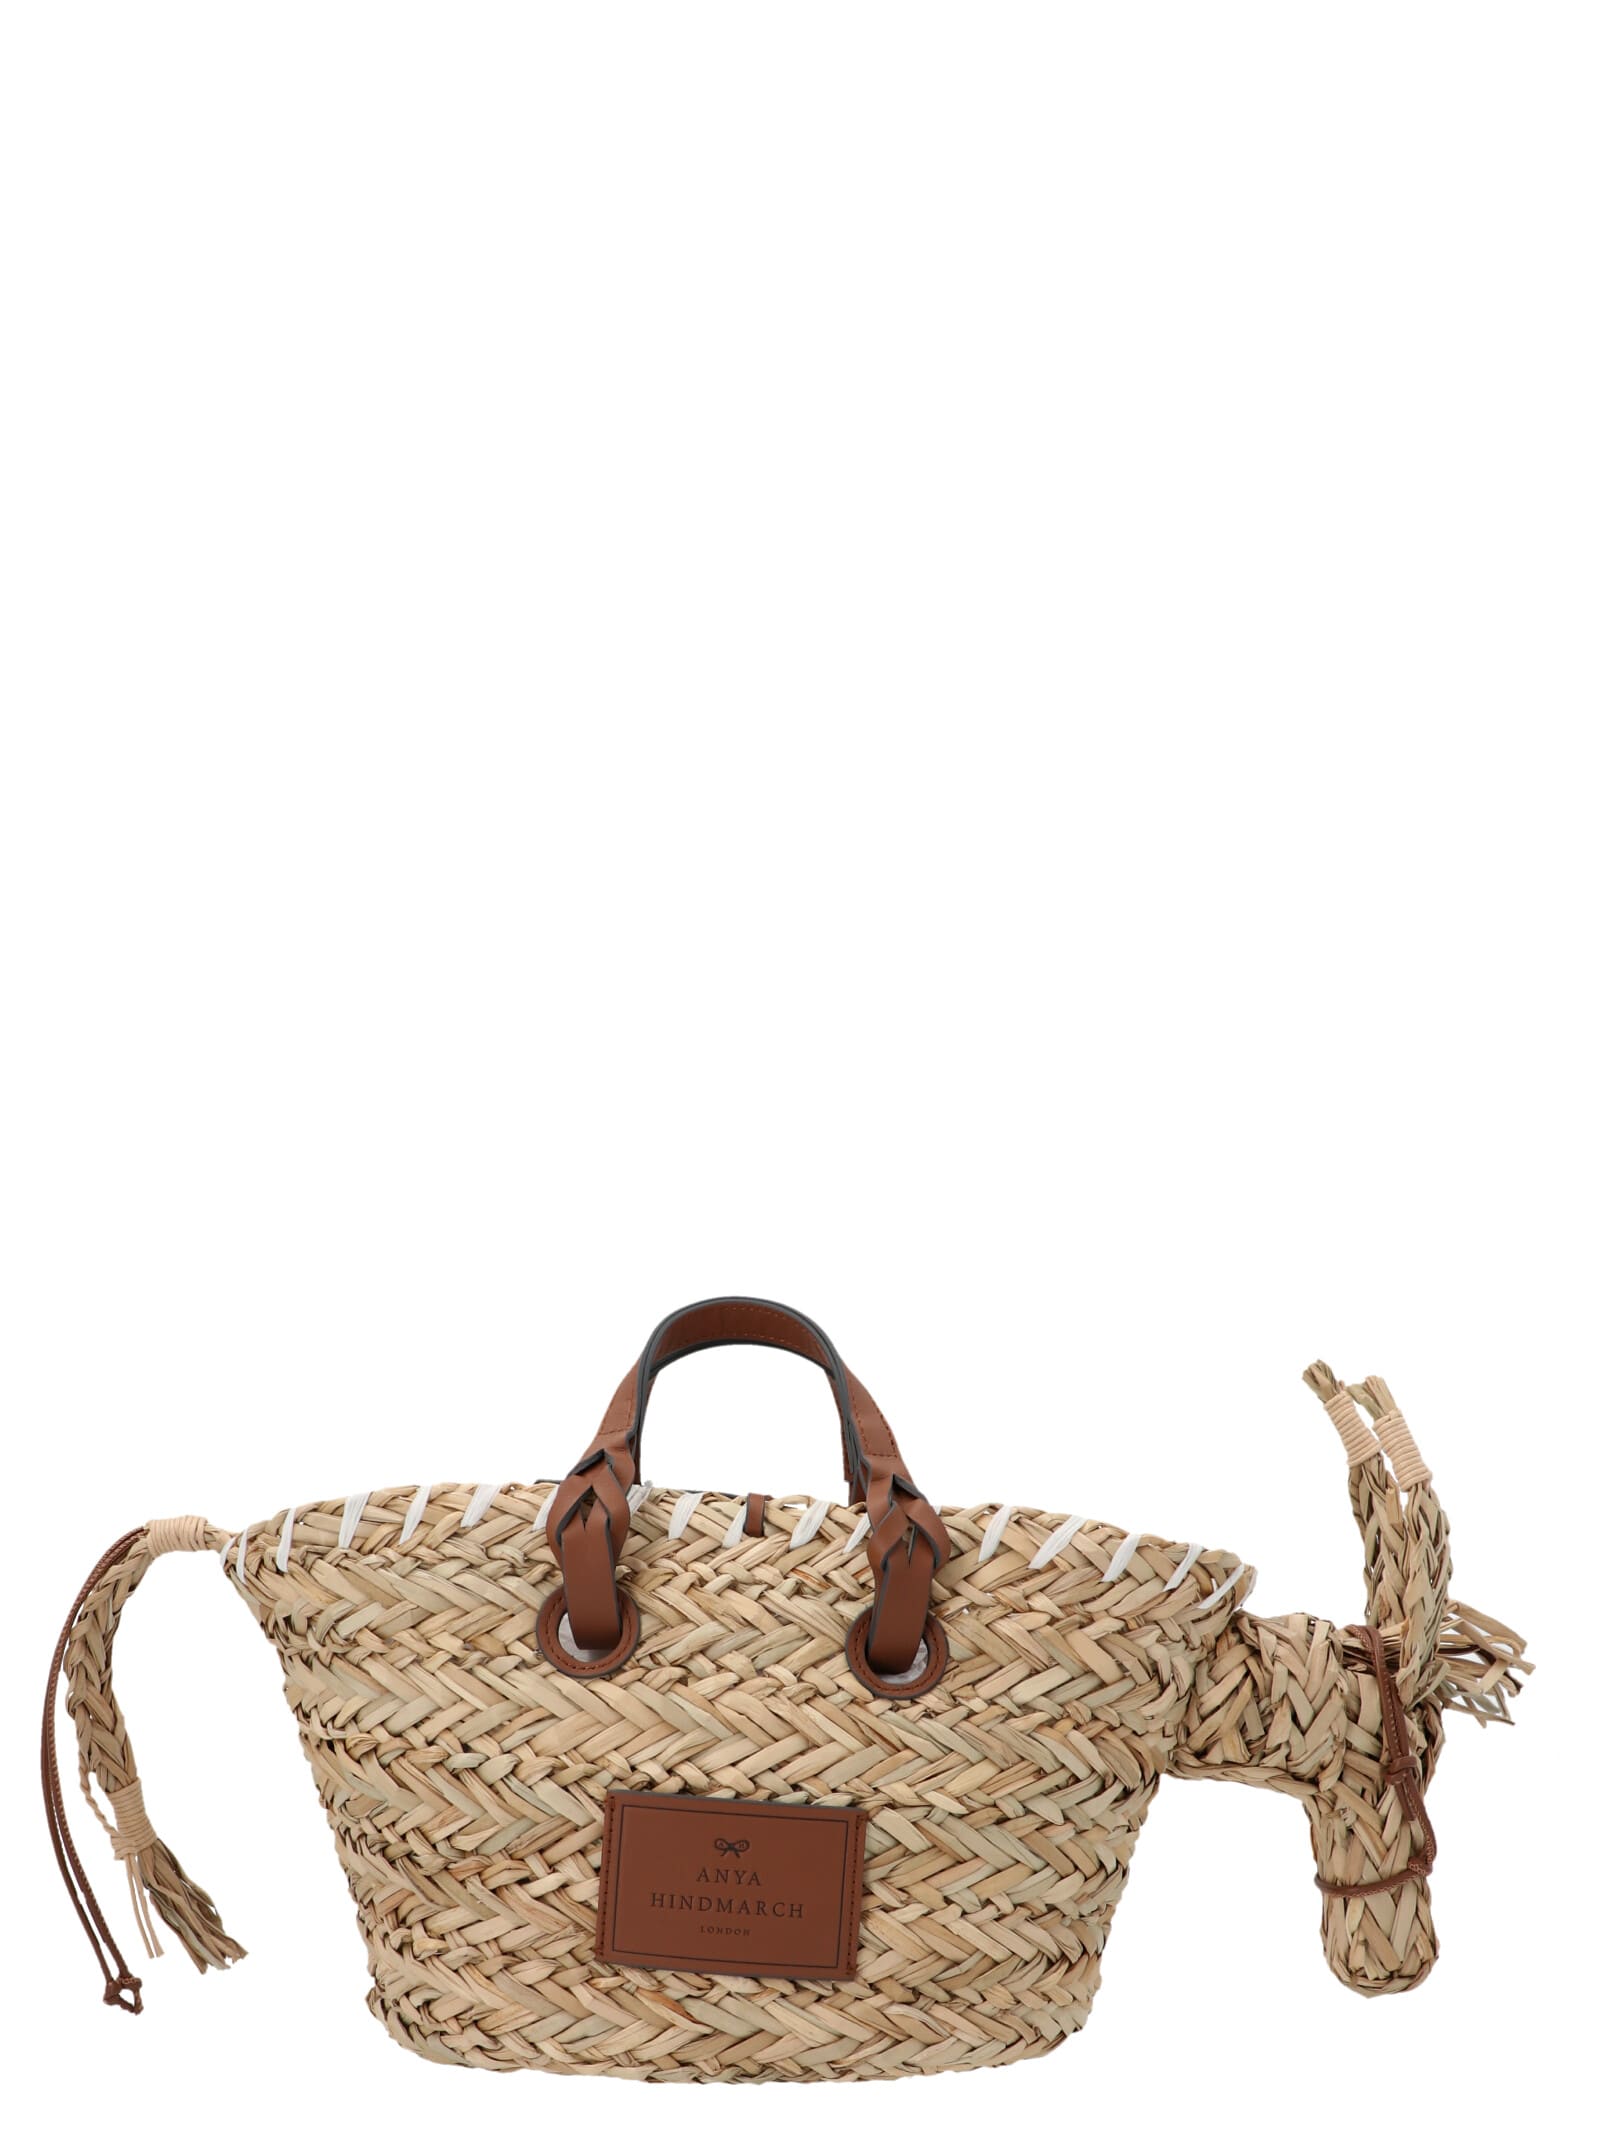 Anya Hindmarch basket Donkey Small Handbag